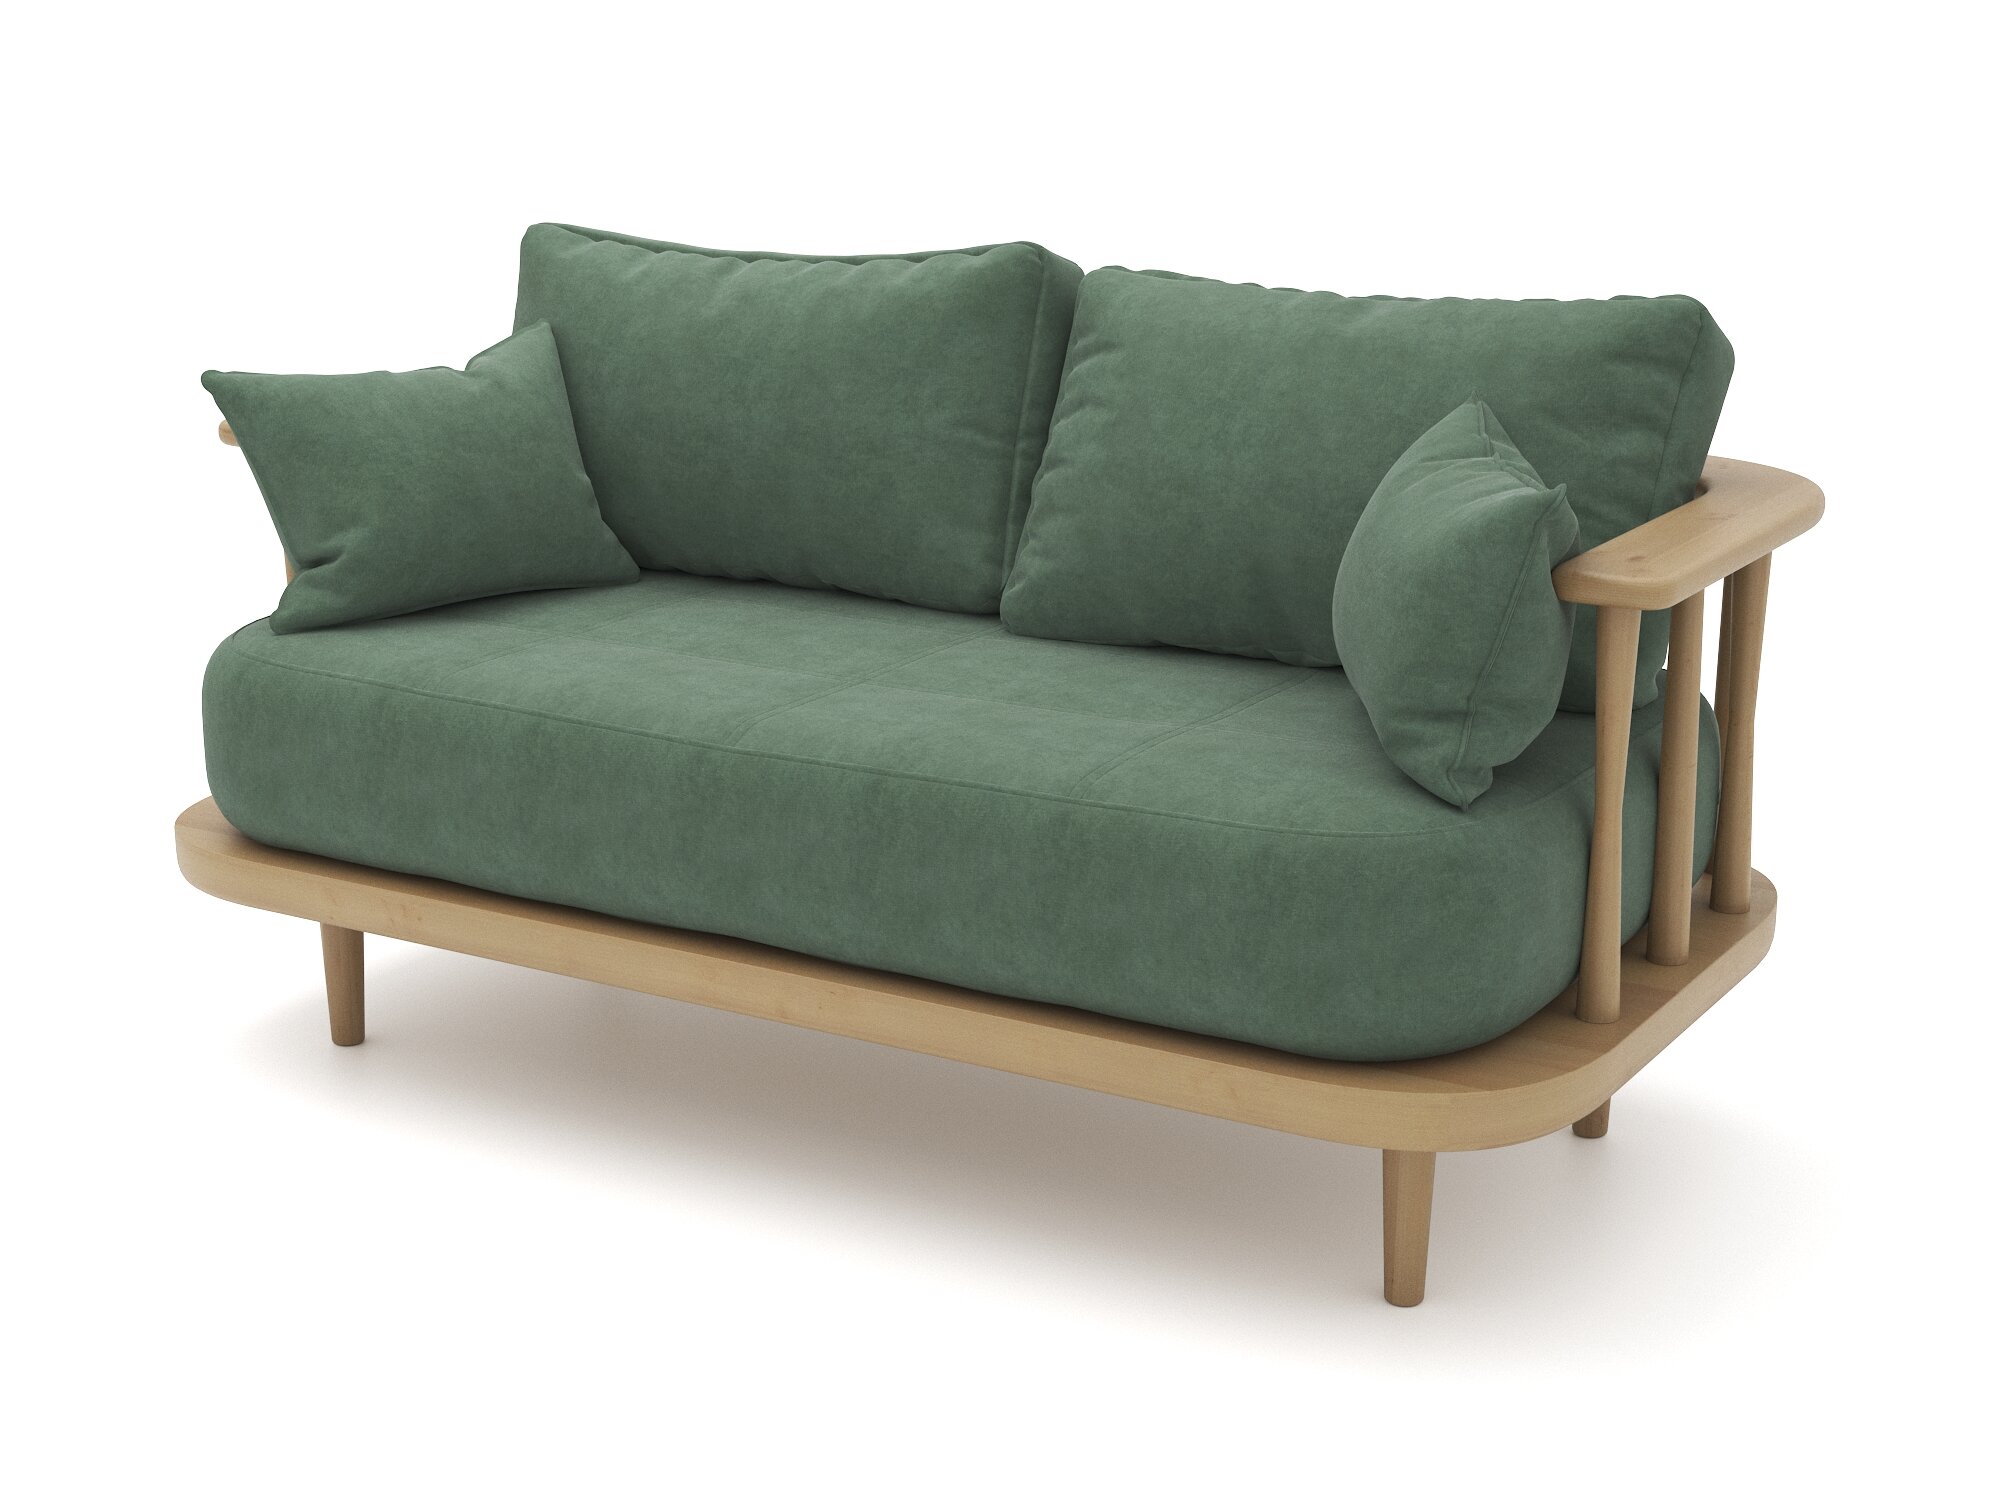 Деревянный дизайнерский диван Soft Element Ламе, двухместный, велюр, зеленый, стиль скандинавский лофт, офисный, дачный, в салон